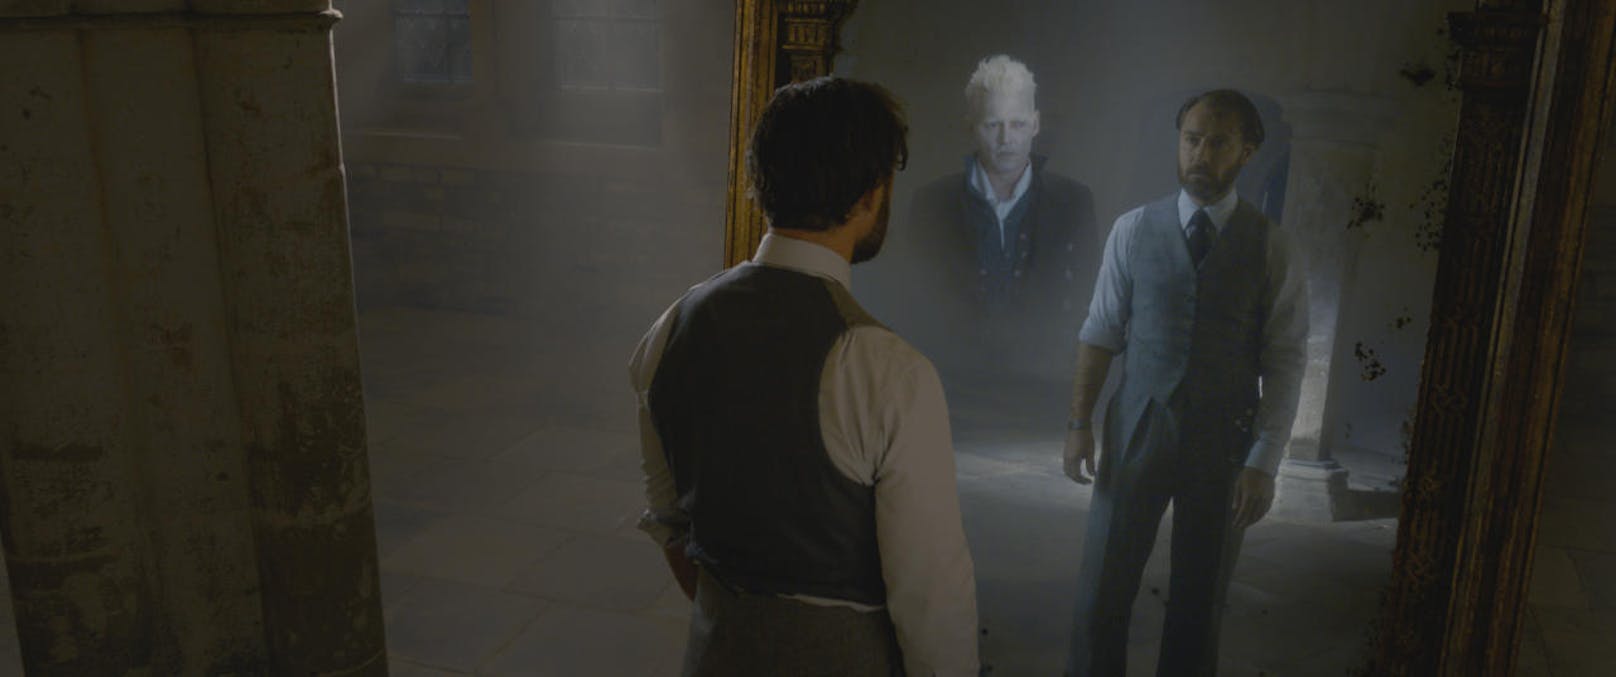 Der Spiegel Nerhegeb zeigt dem Betrachter sein größtes Verlanden. Albus Dumbledore (Jude Law) erblickt darin Grindelwald (Johnny Depp). 